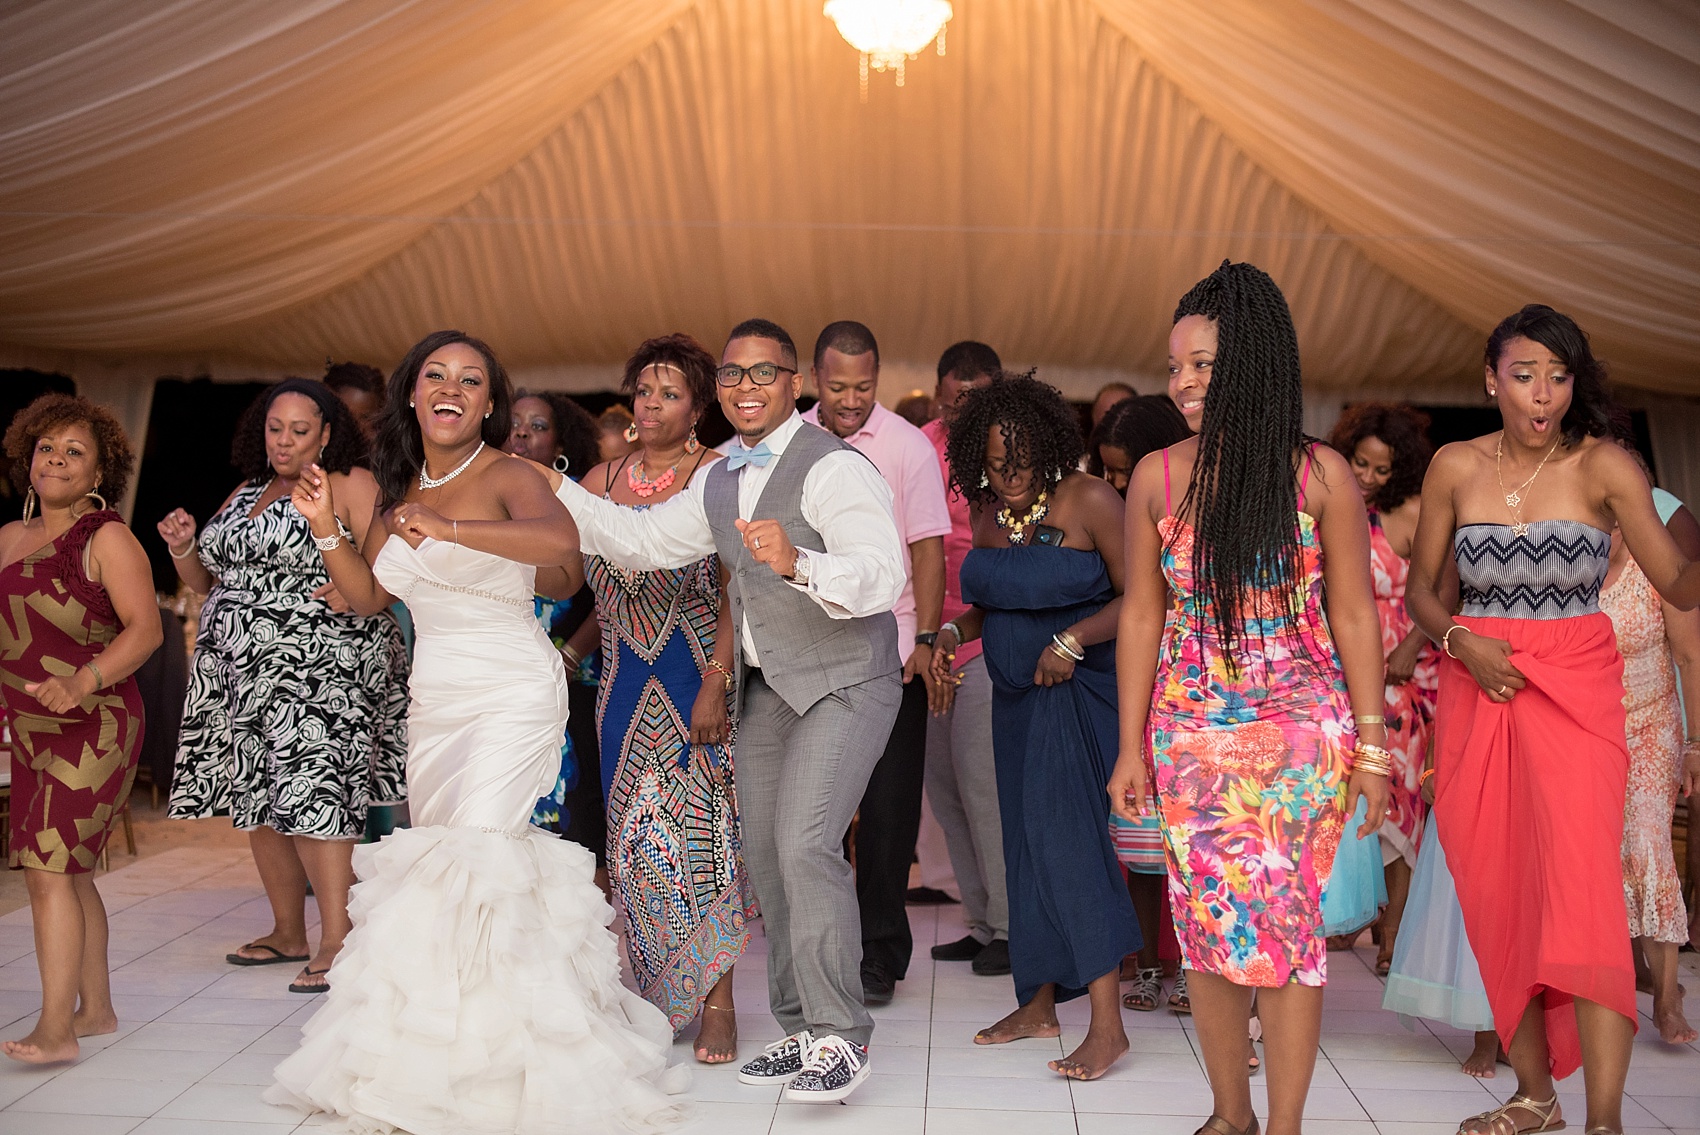 Iberostar Jamaica wedding photos. Images by Mikkel Paige Photography.